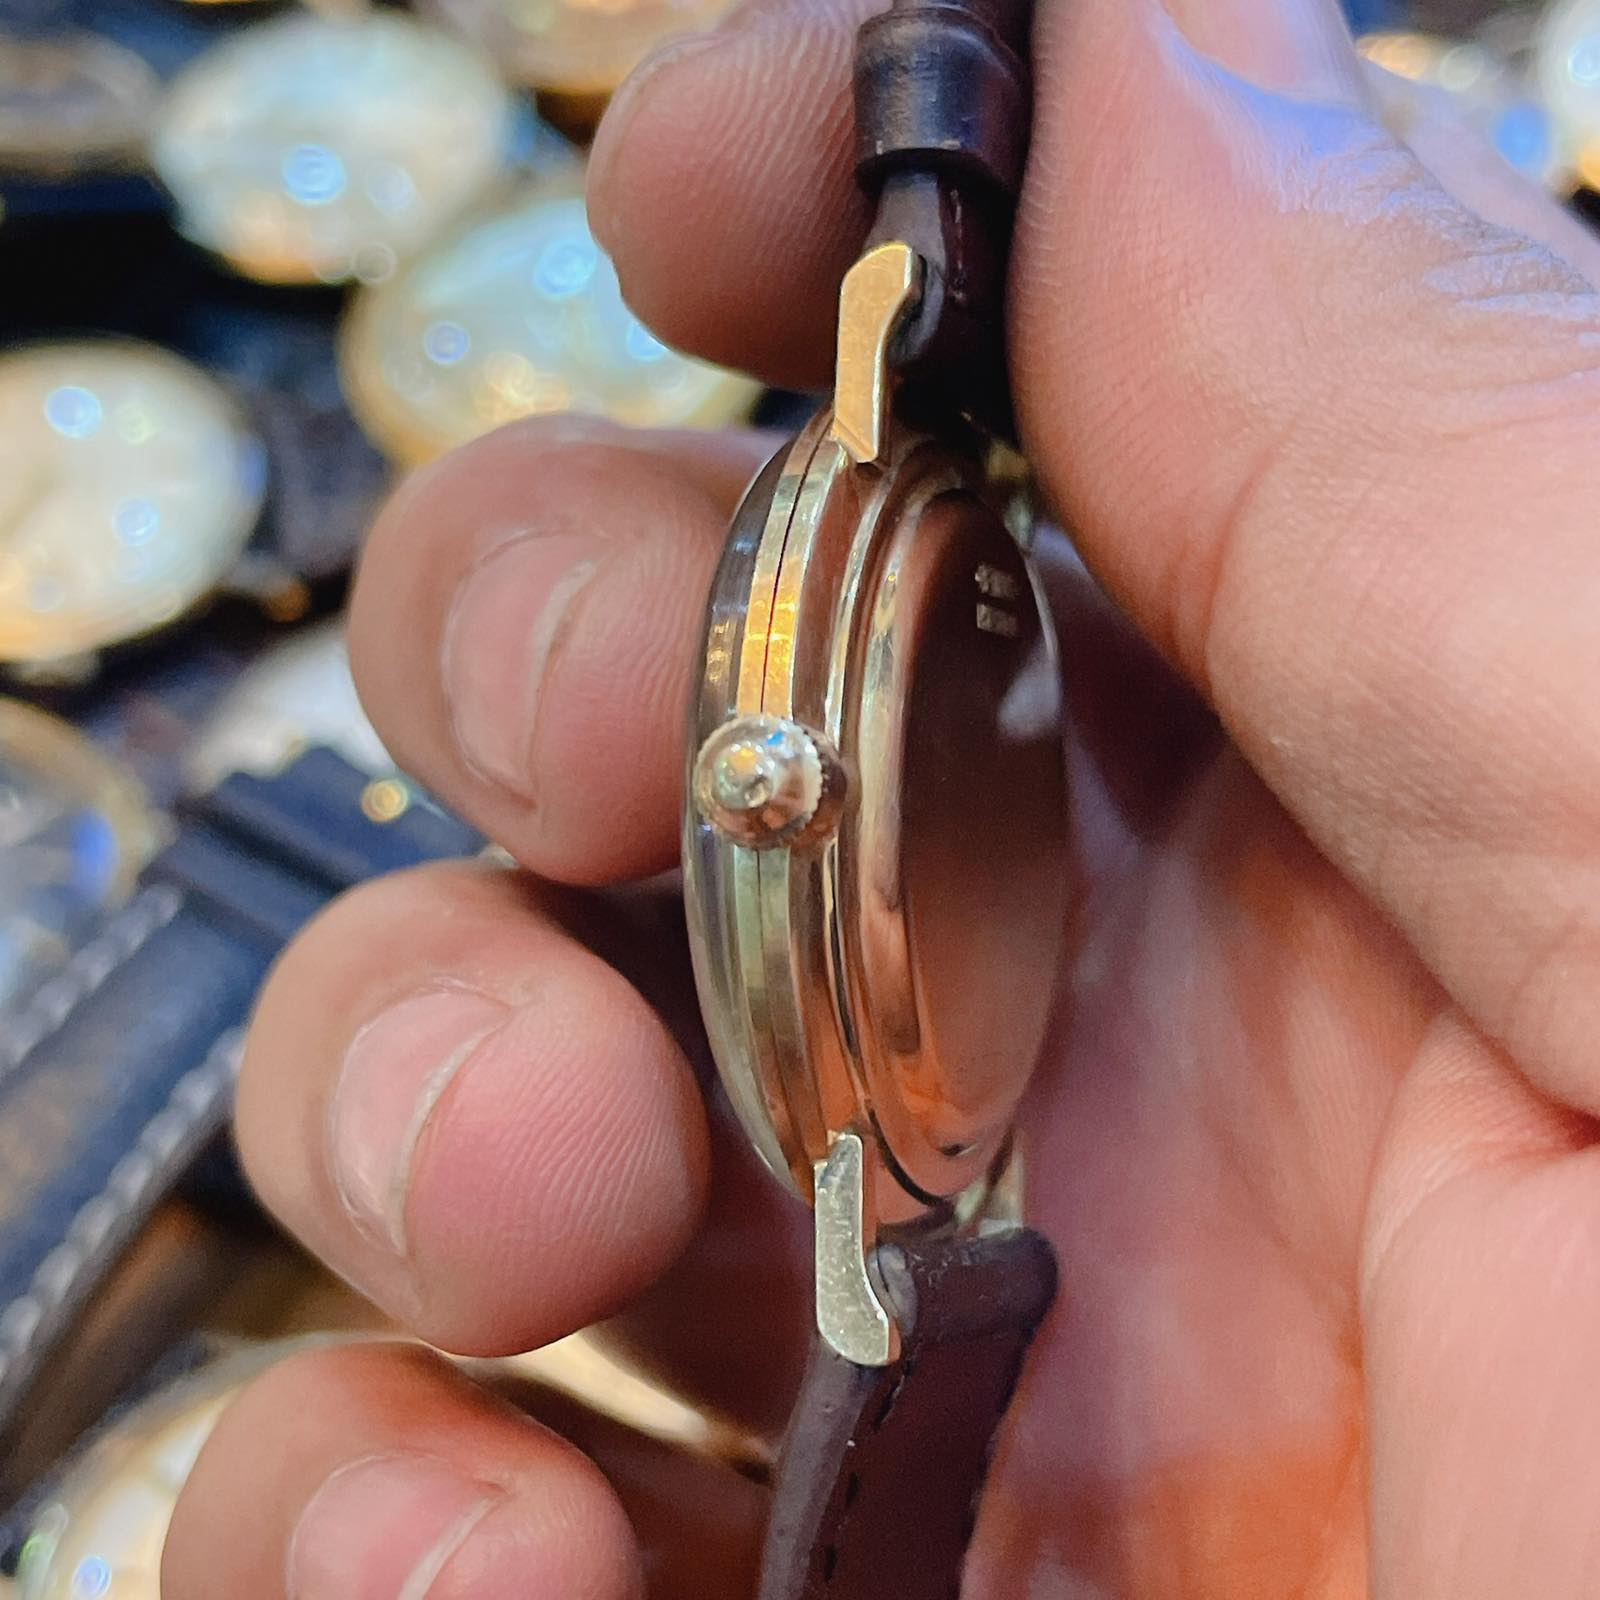 Đồng hồ cổ Benrus lên dây siêu mỏng vàng đúc 14k chính hãng thụy Sĩ